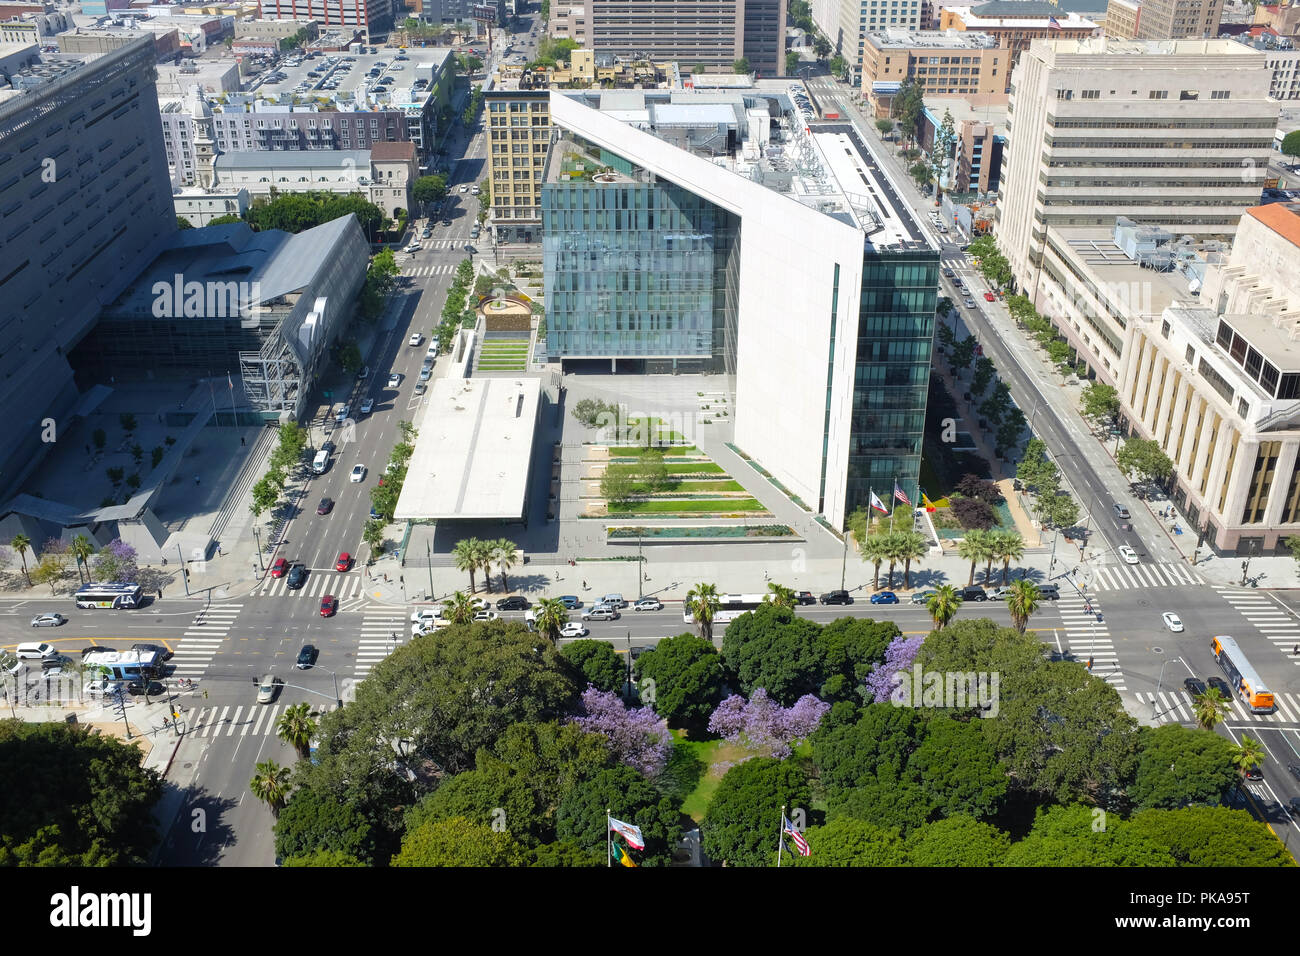 LOS ANGELES, Kalifornien - 12. Juni 2018: Die Polizei Verwaltung, flankiert vom LADOT und LA Times Gebäude. Aus dem Rathaus gesehen. Stockfoto